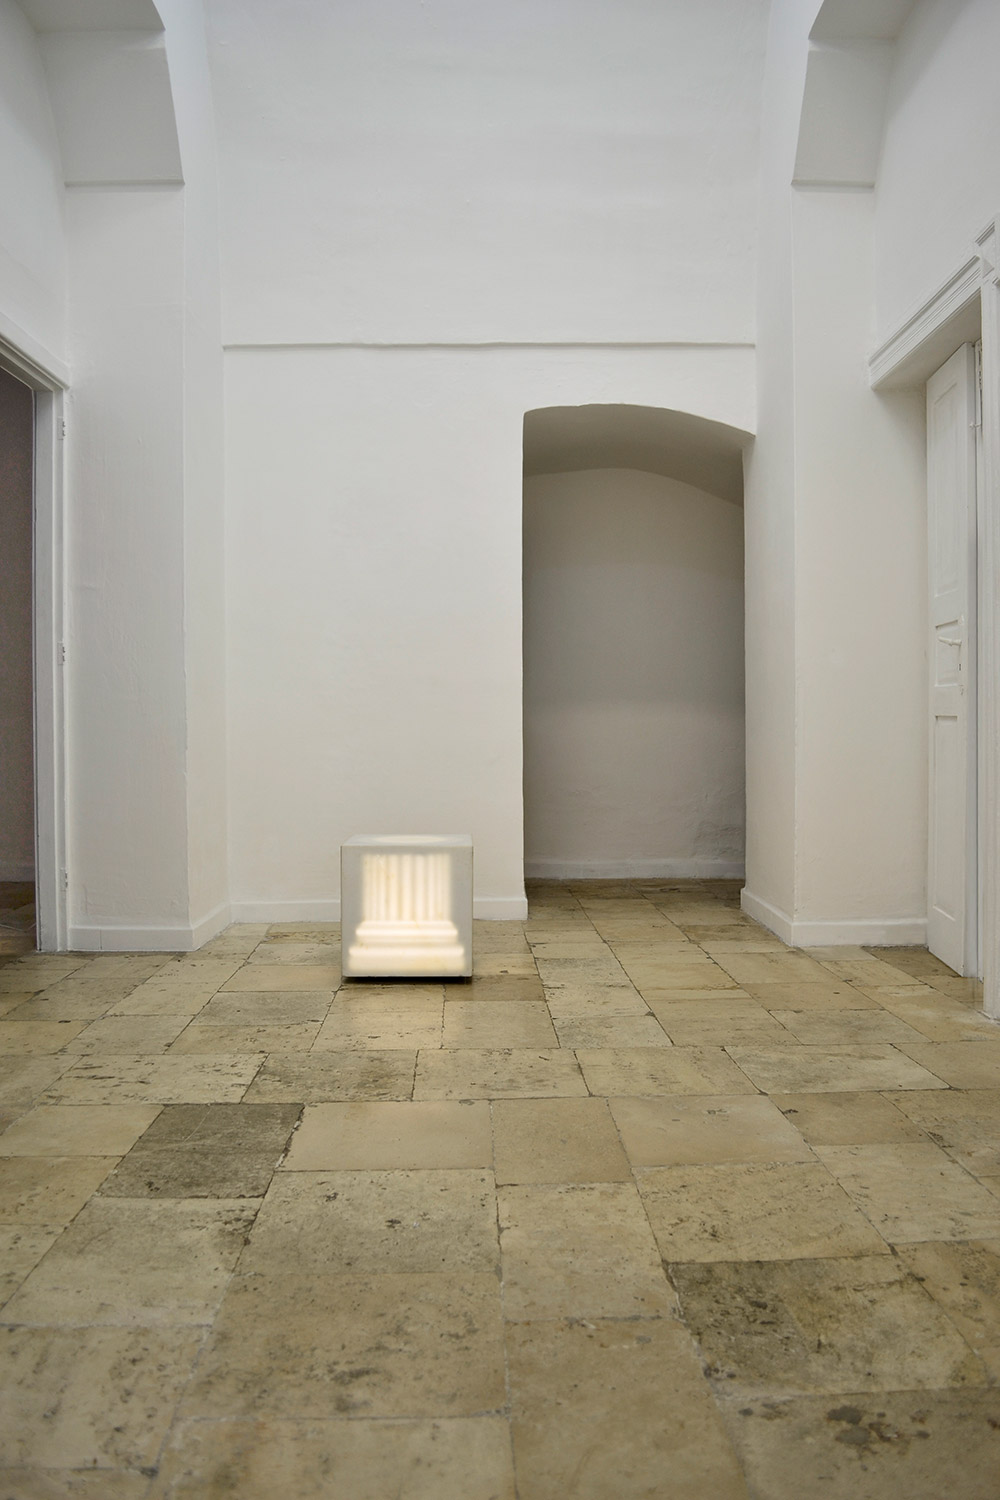 Antonio Trotta, Colonna con luce, 1972, marmo inciso, luce, 40x40 cm (ON)